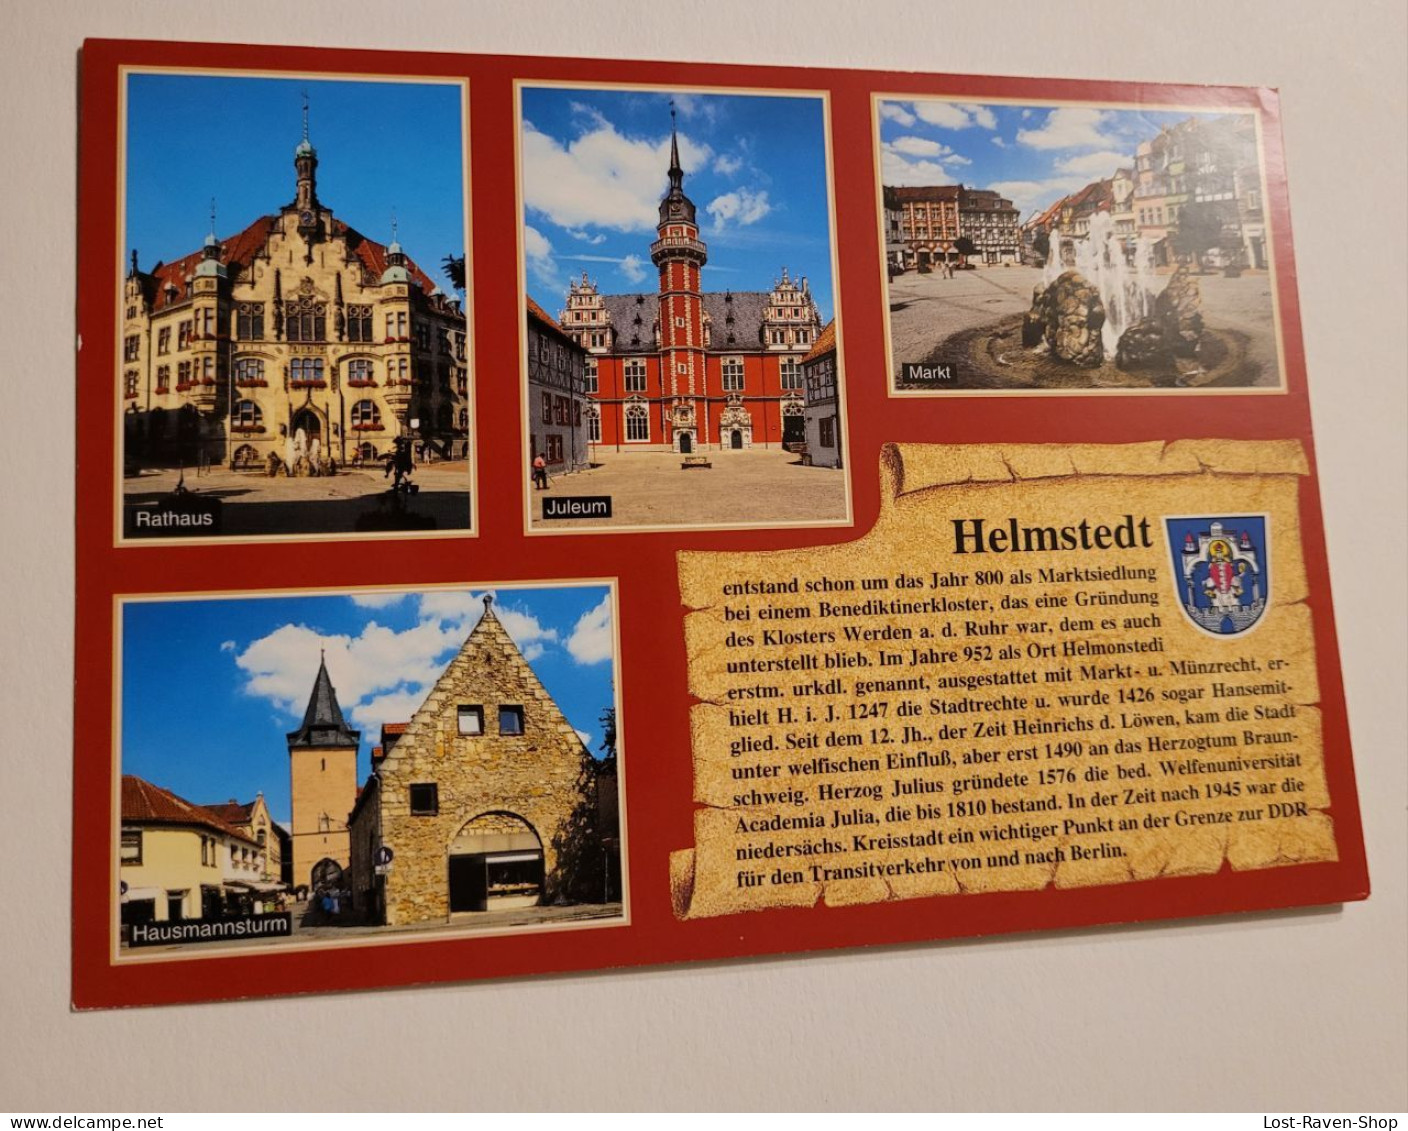 Helmstedt - Helmstedt